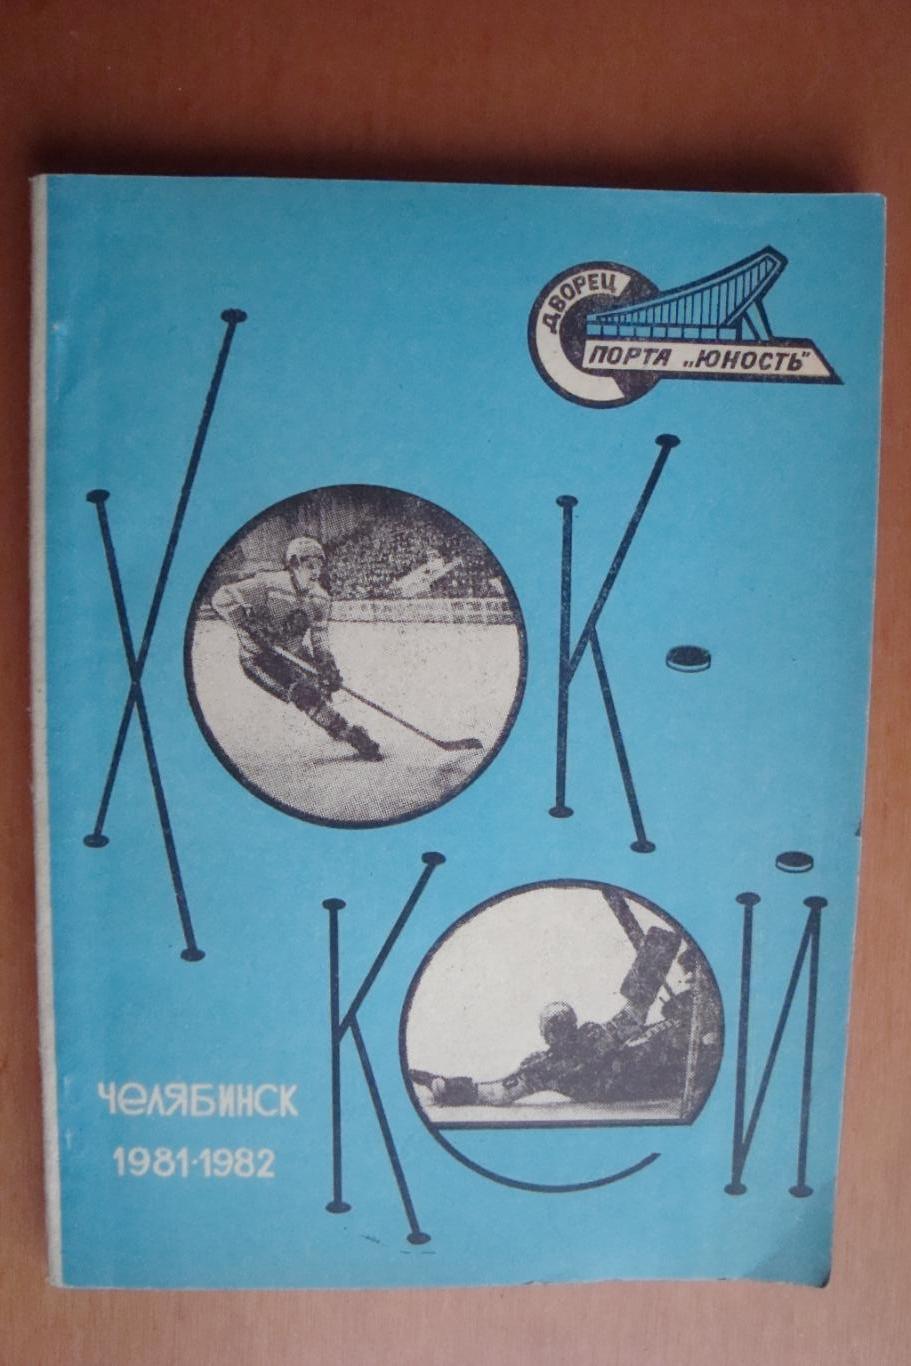 Календарь - справочник Хоккей 1981-1982 Челябинск, 95 стр.